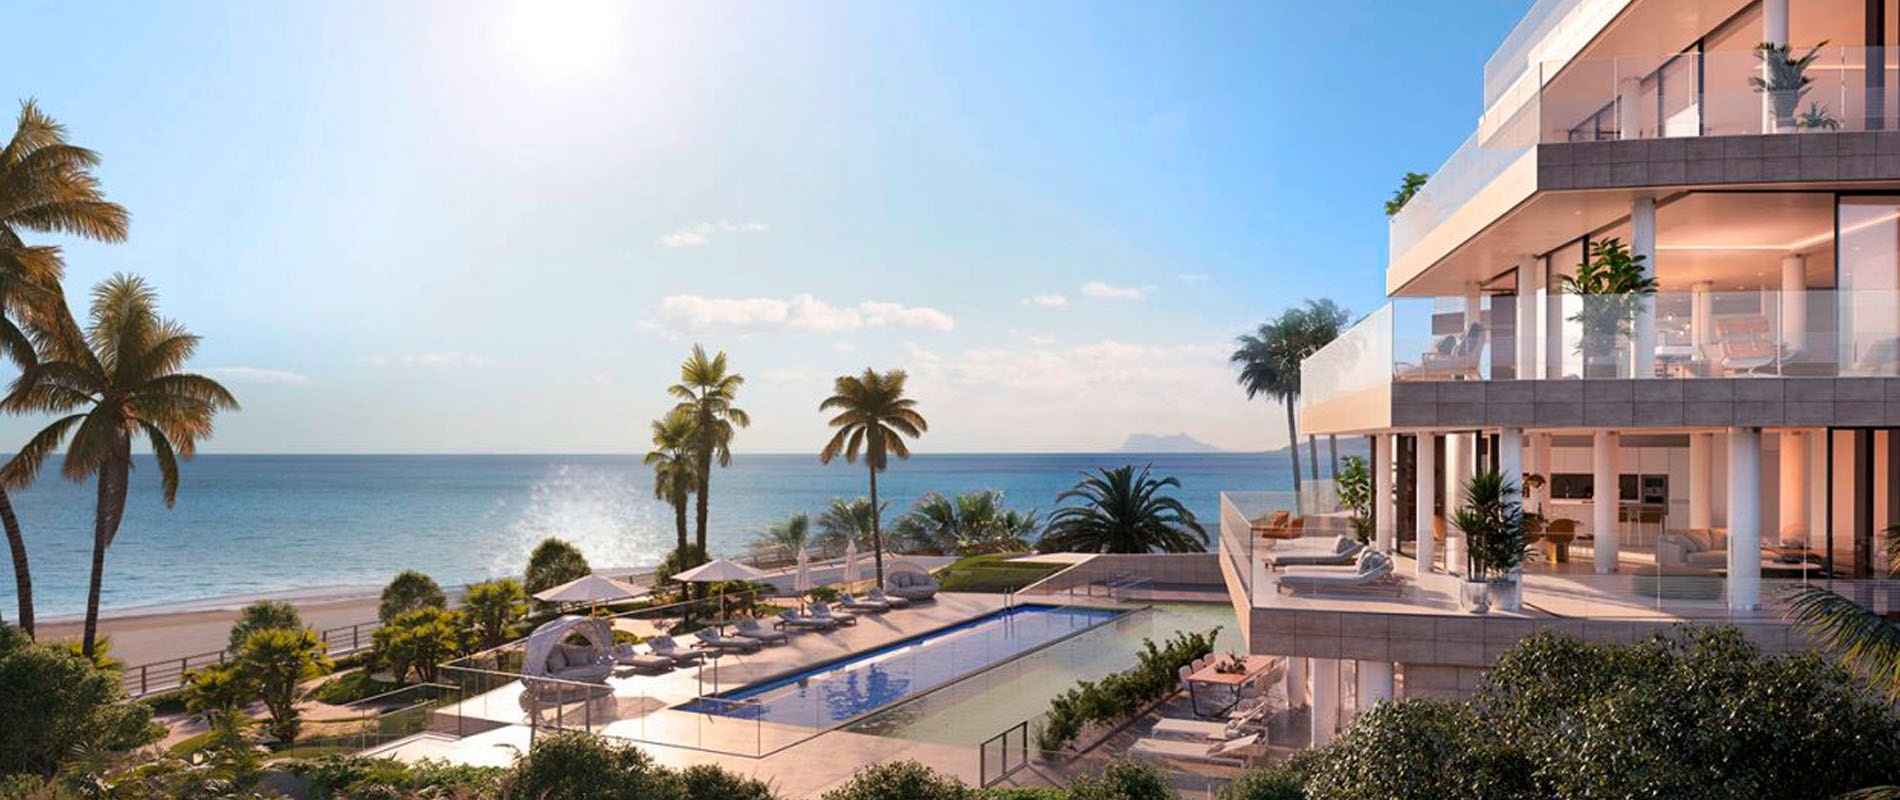 Immobilien Marbella und Puerto Banus zum Verkauf